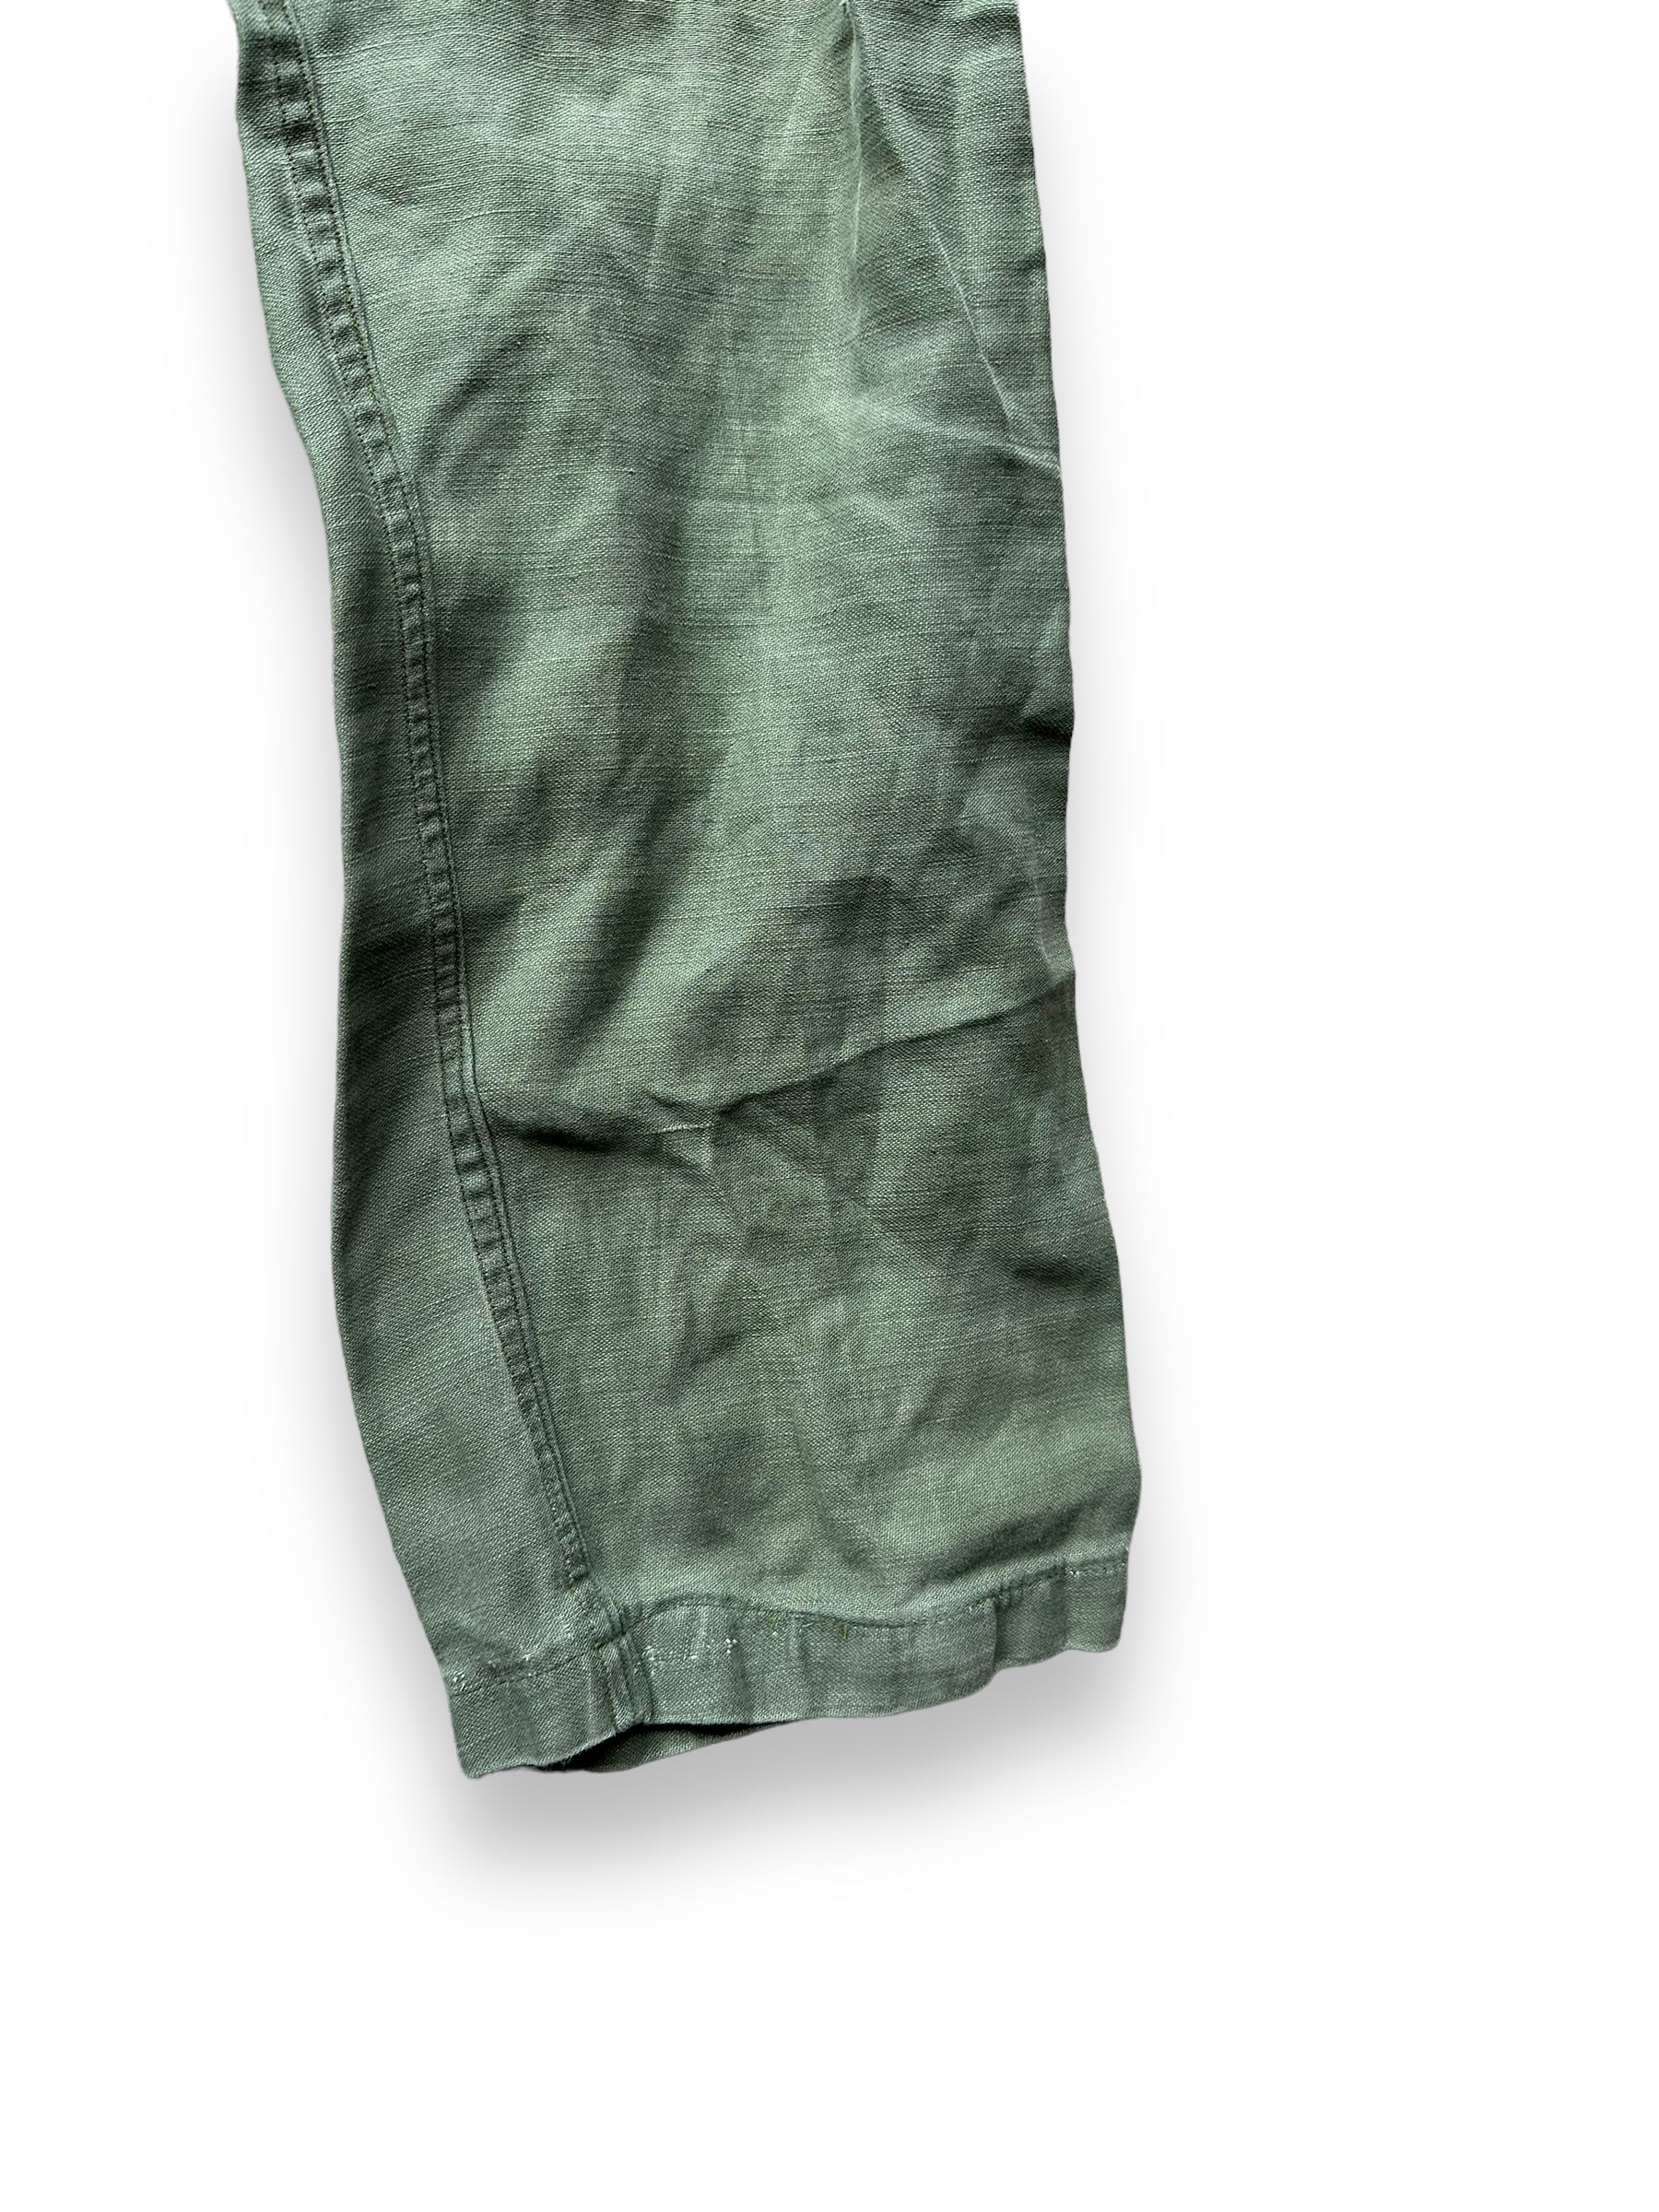 Left Front Leg on Vintage Sateen OG-107's W30 L32.5 | Vintage Viet Nam Era Baker Pants Seattle | Barn Owl Vintage Workwear